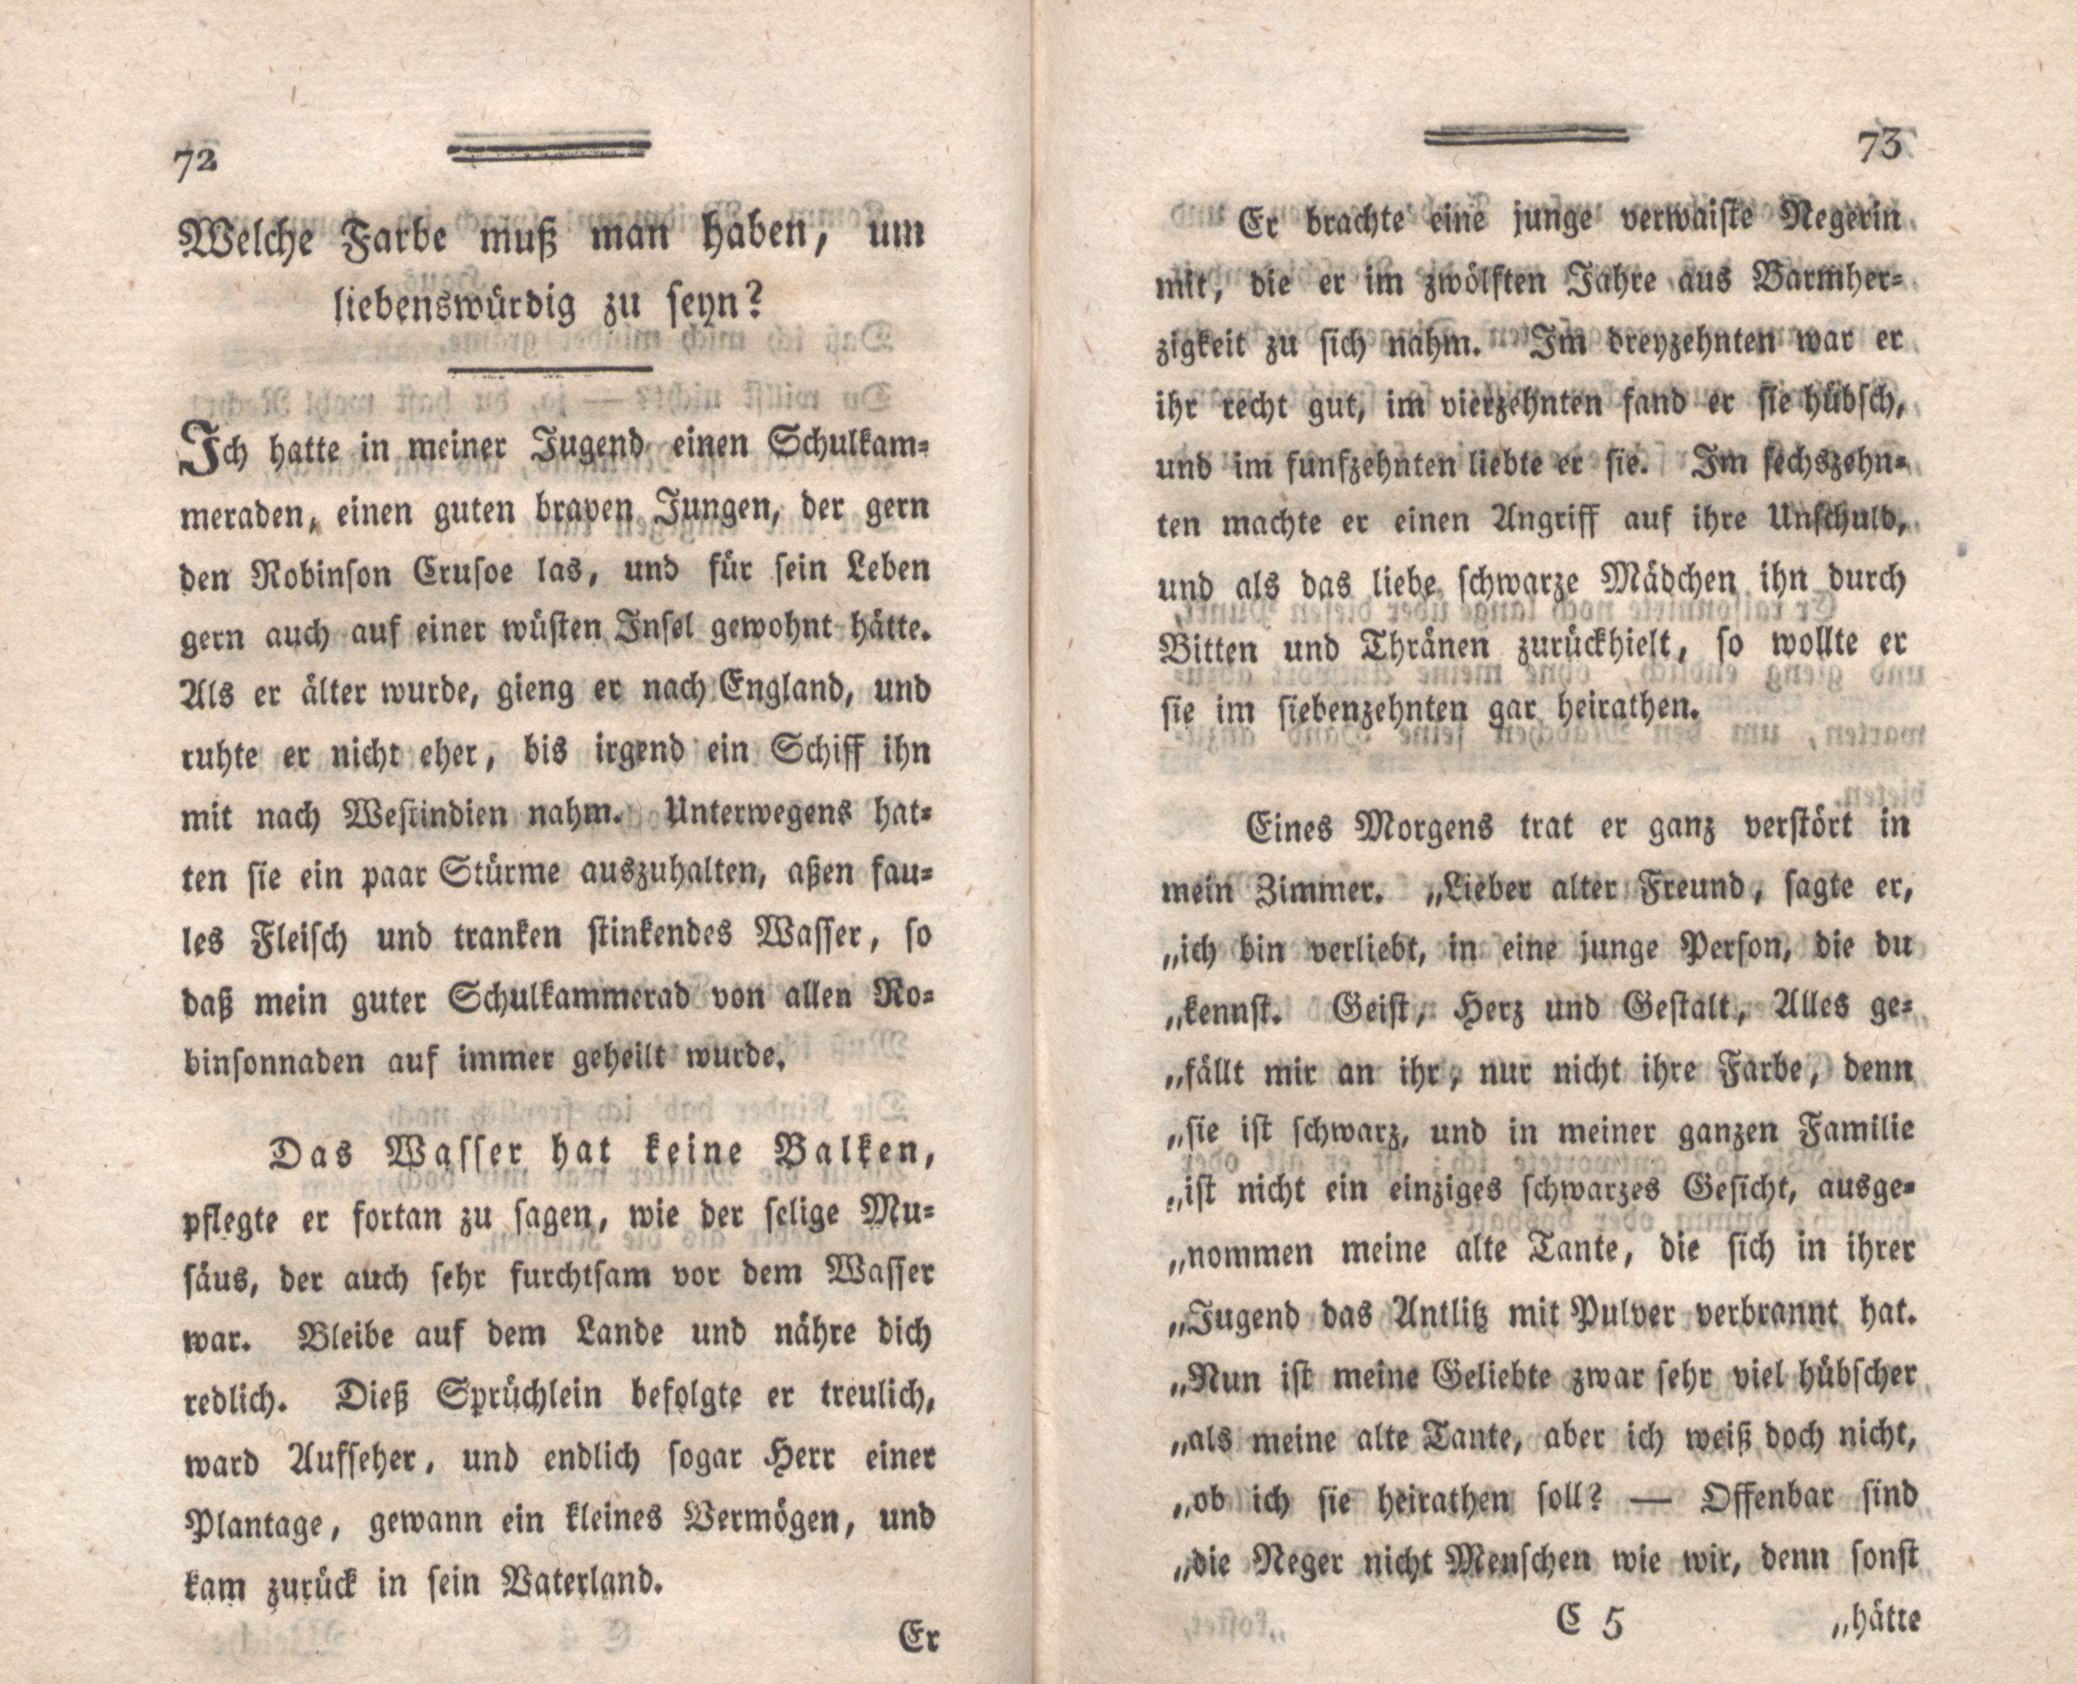 Welche Farbe muss man haben, um liebenswürdig zu seyn? (1794) | 1. (72-73) Main body of text